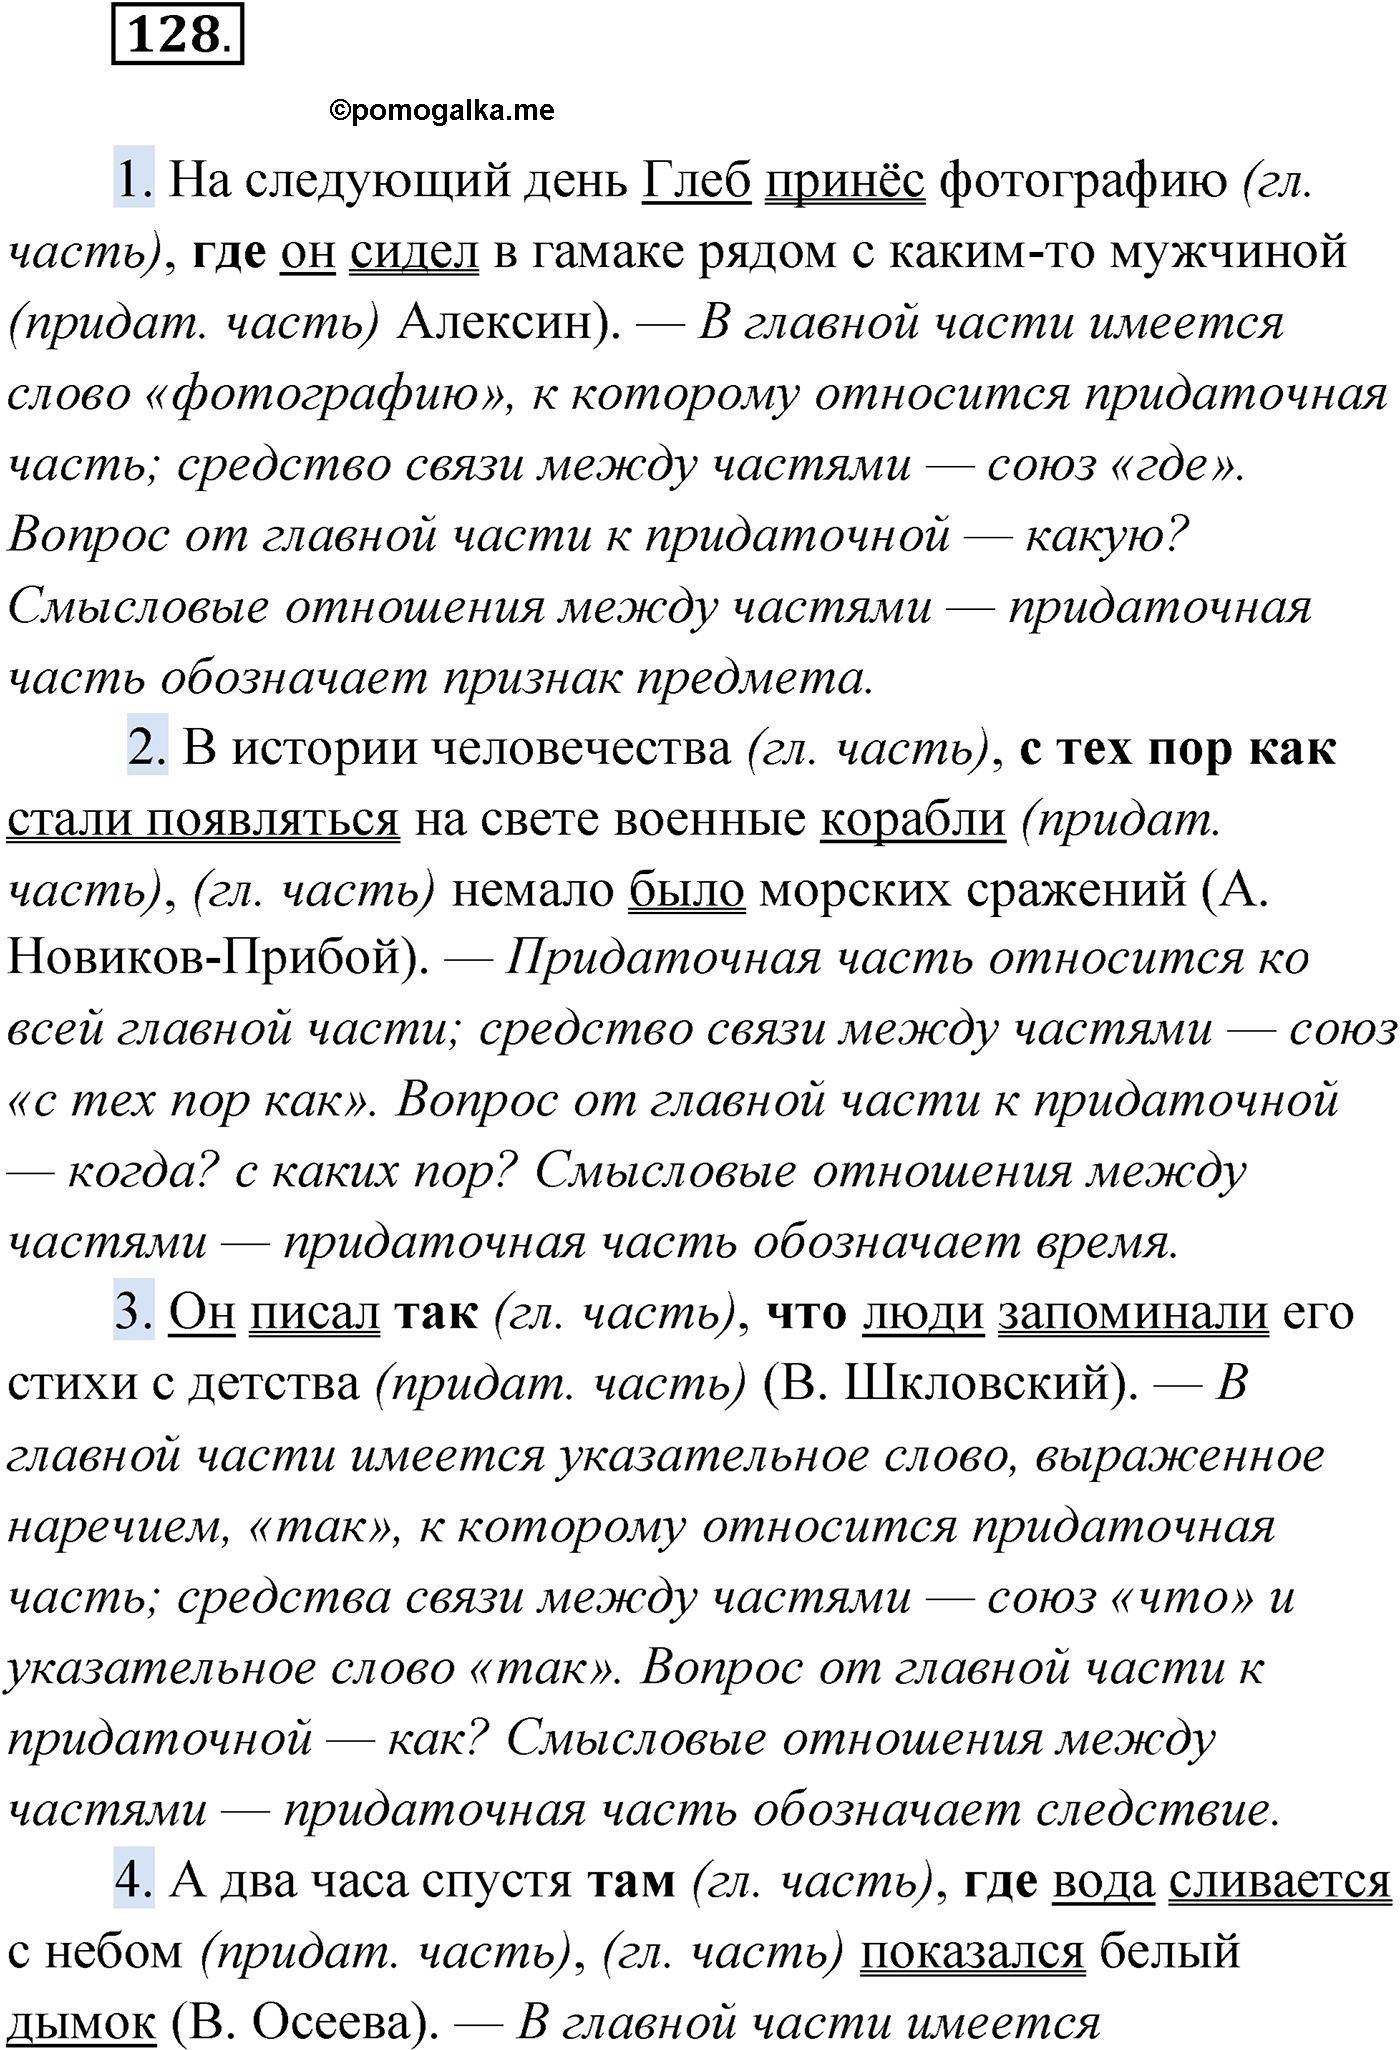 упражнение №128 русский язык 9 класс Мурина 2019 год